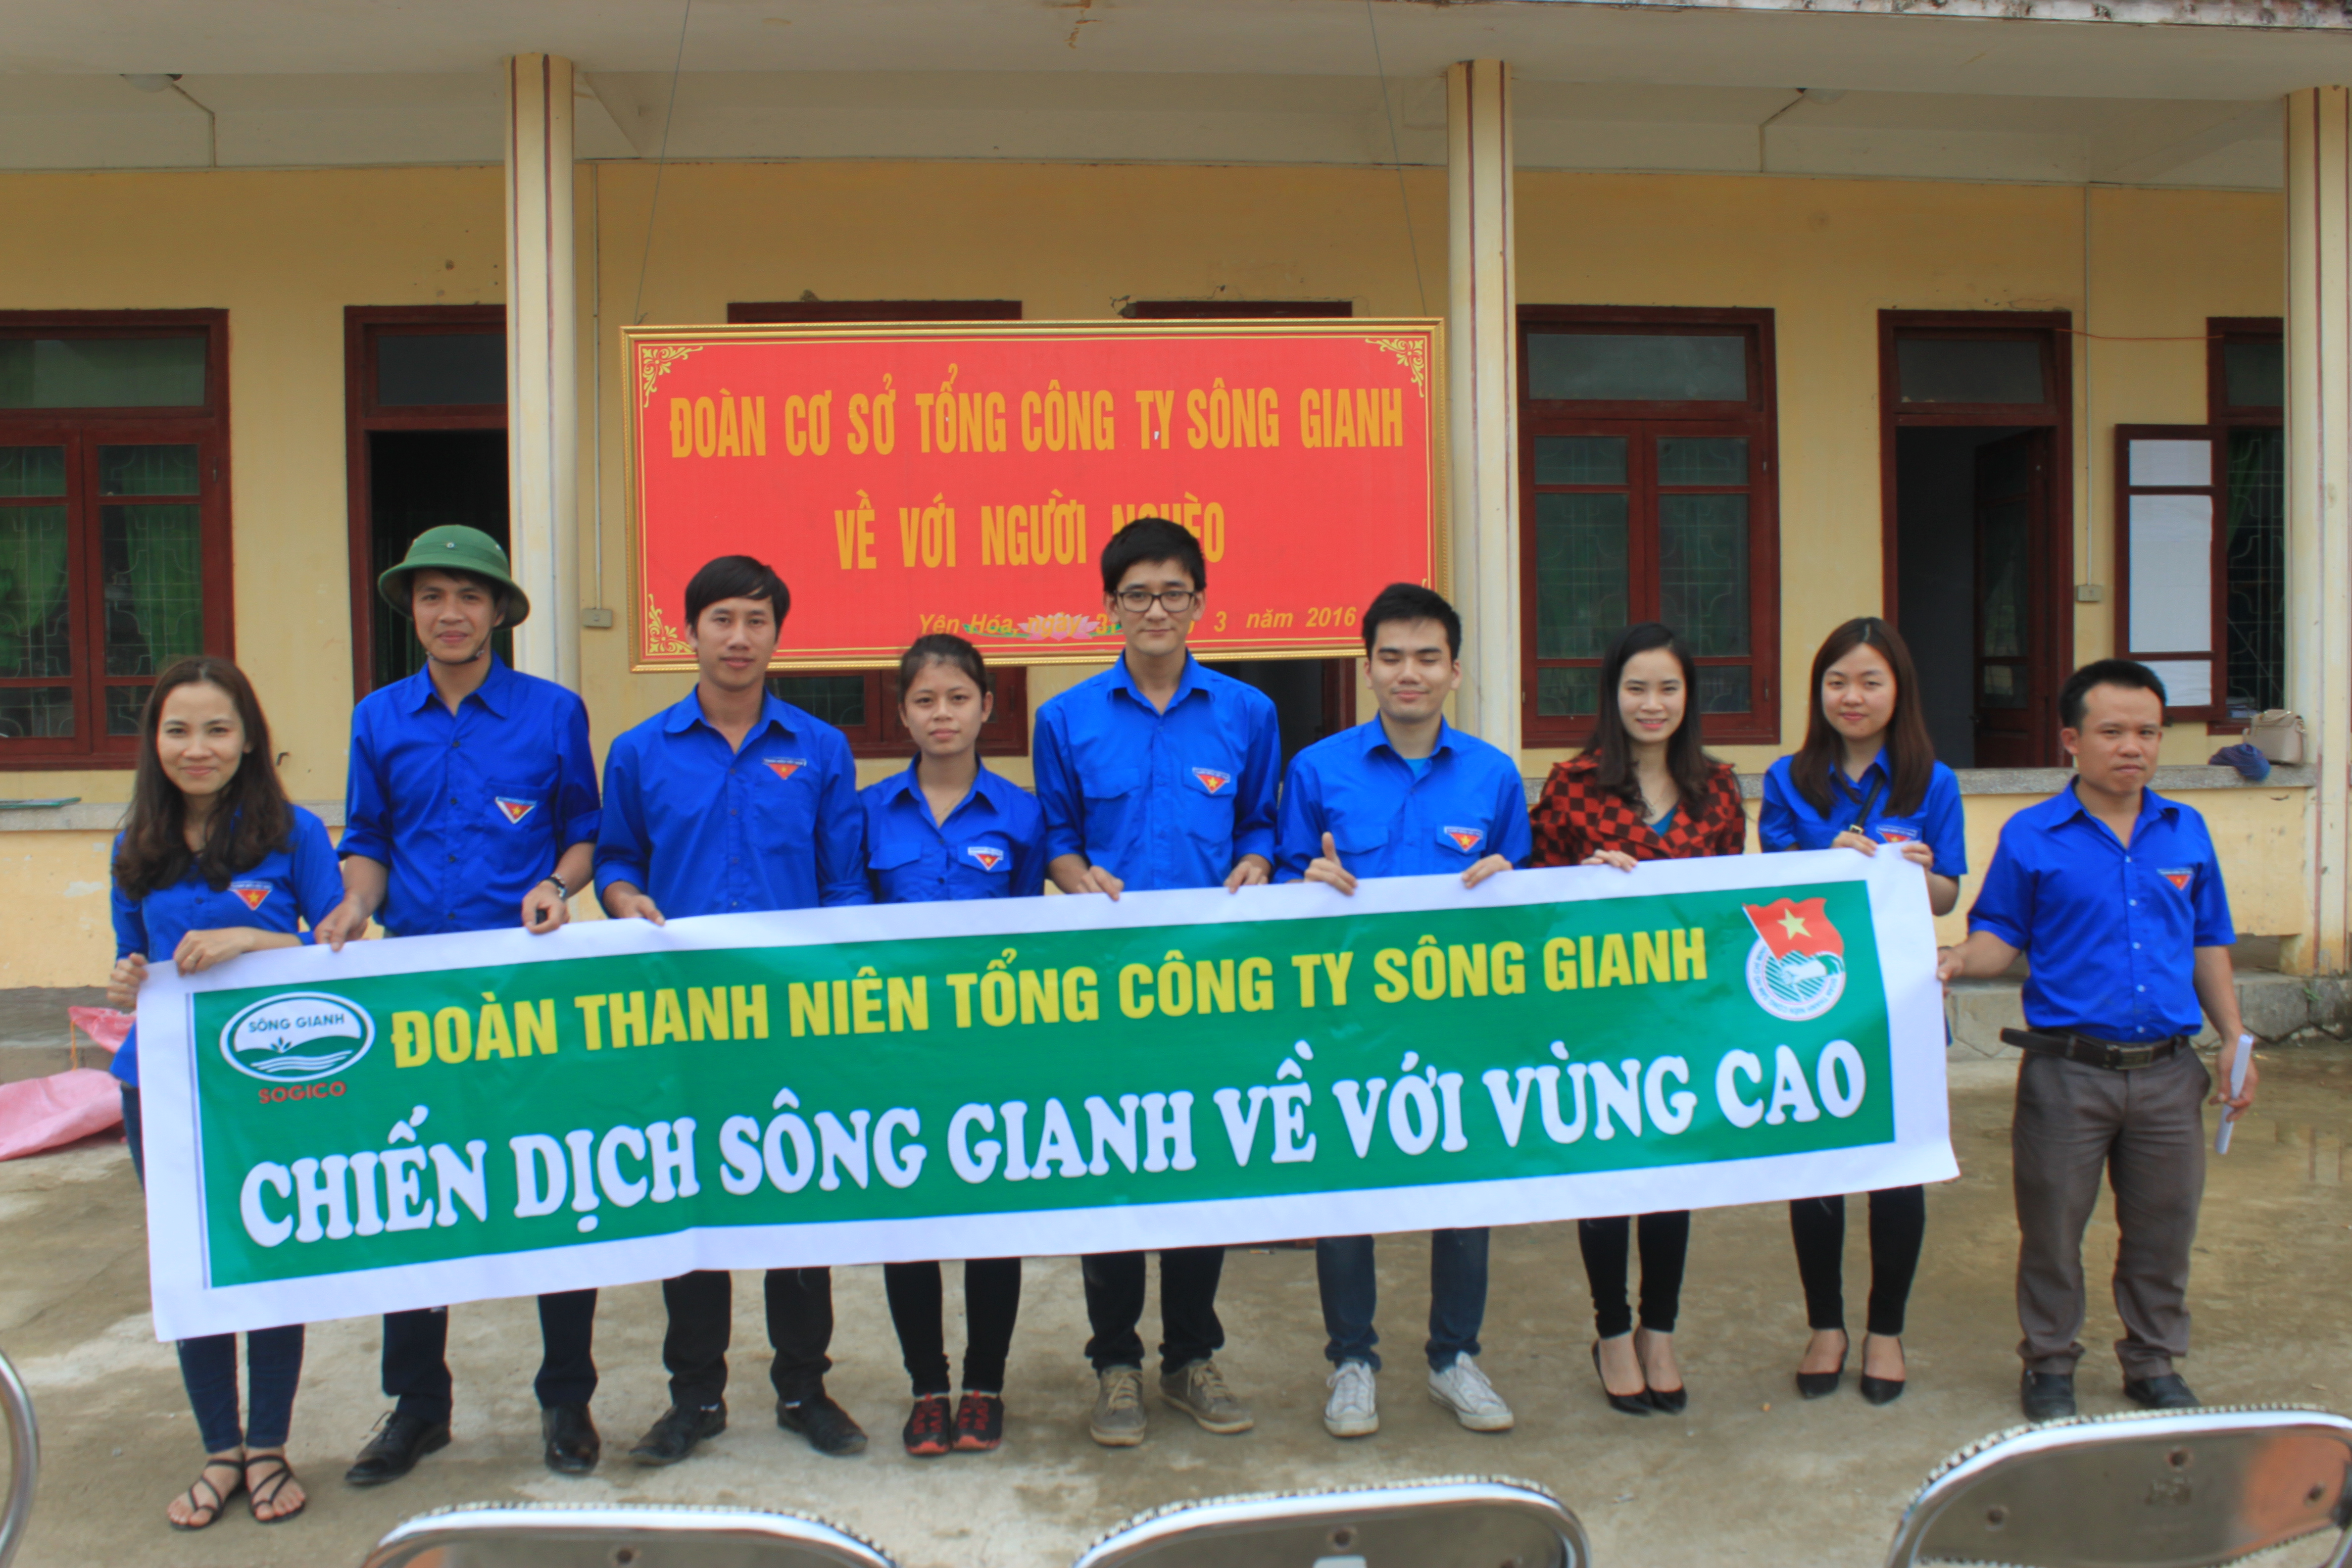 Đoàn Thanh niên Tổng công ty Sông Gianh tổ chức đi tình nguyện tới vùng cao